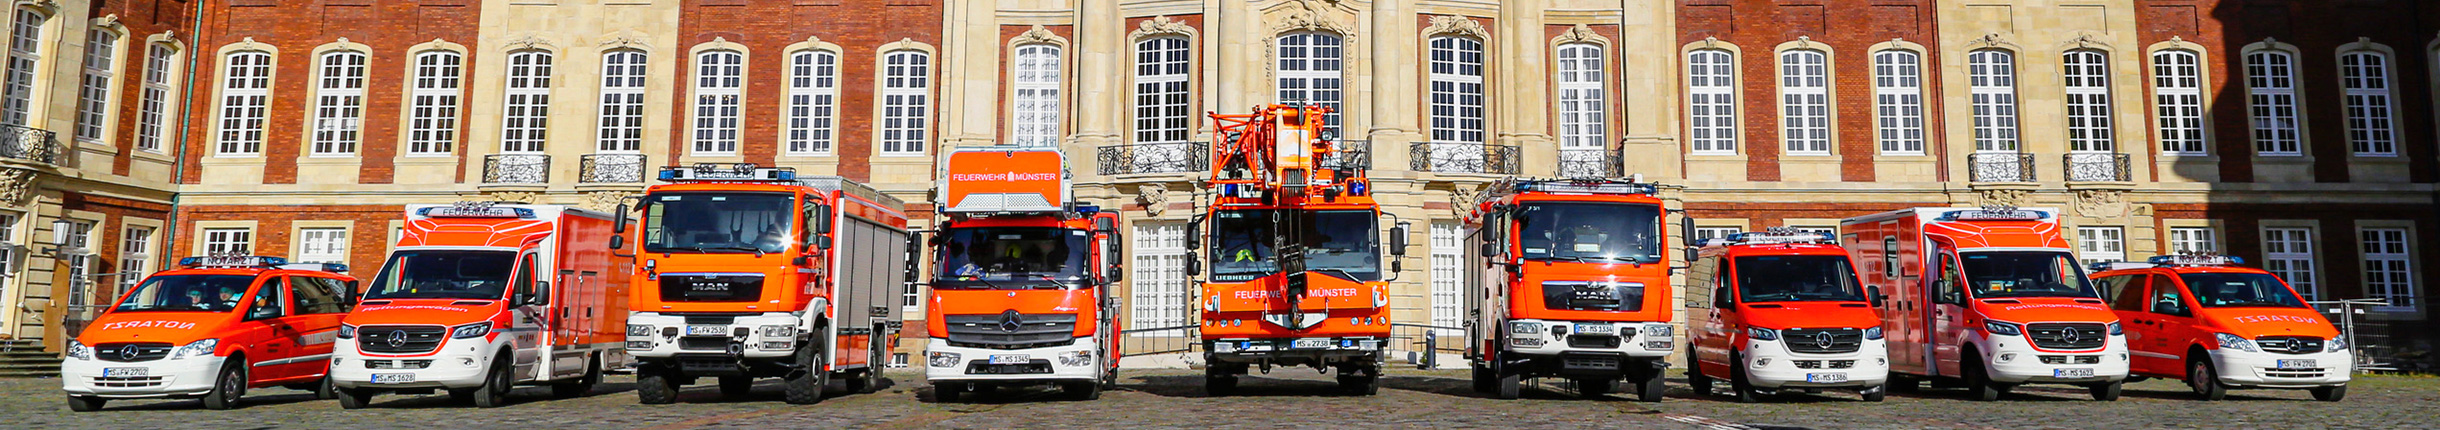 Verschiedene Feuerwehrfahrzeuge vor dem münsterschen Schloss aufgestellt